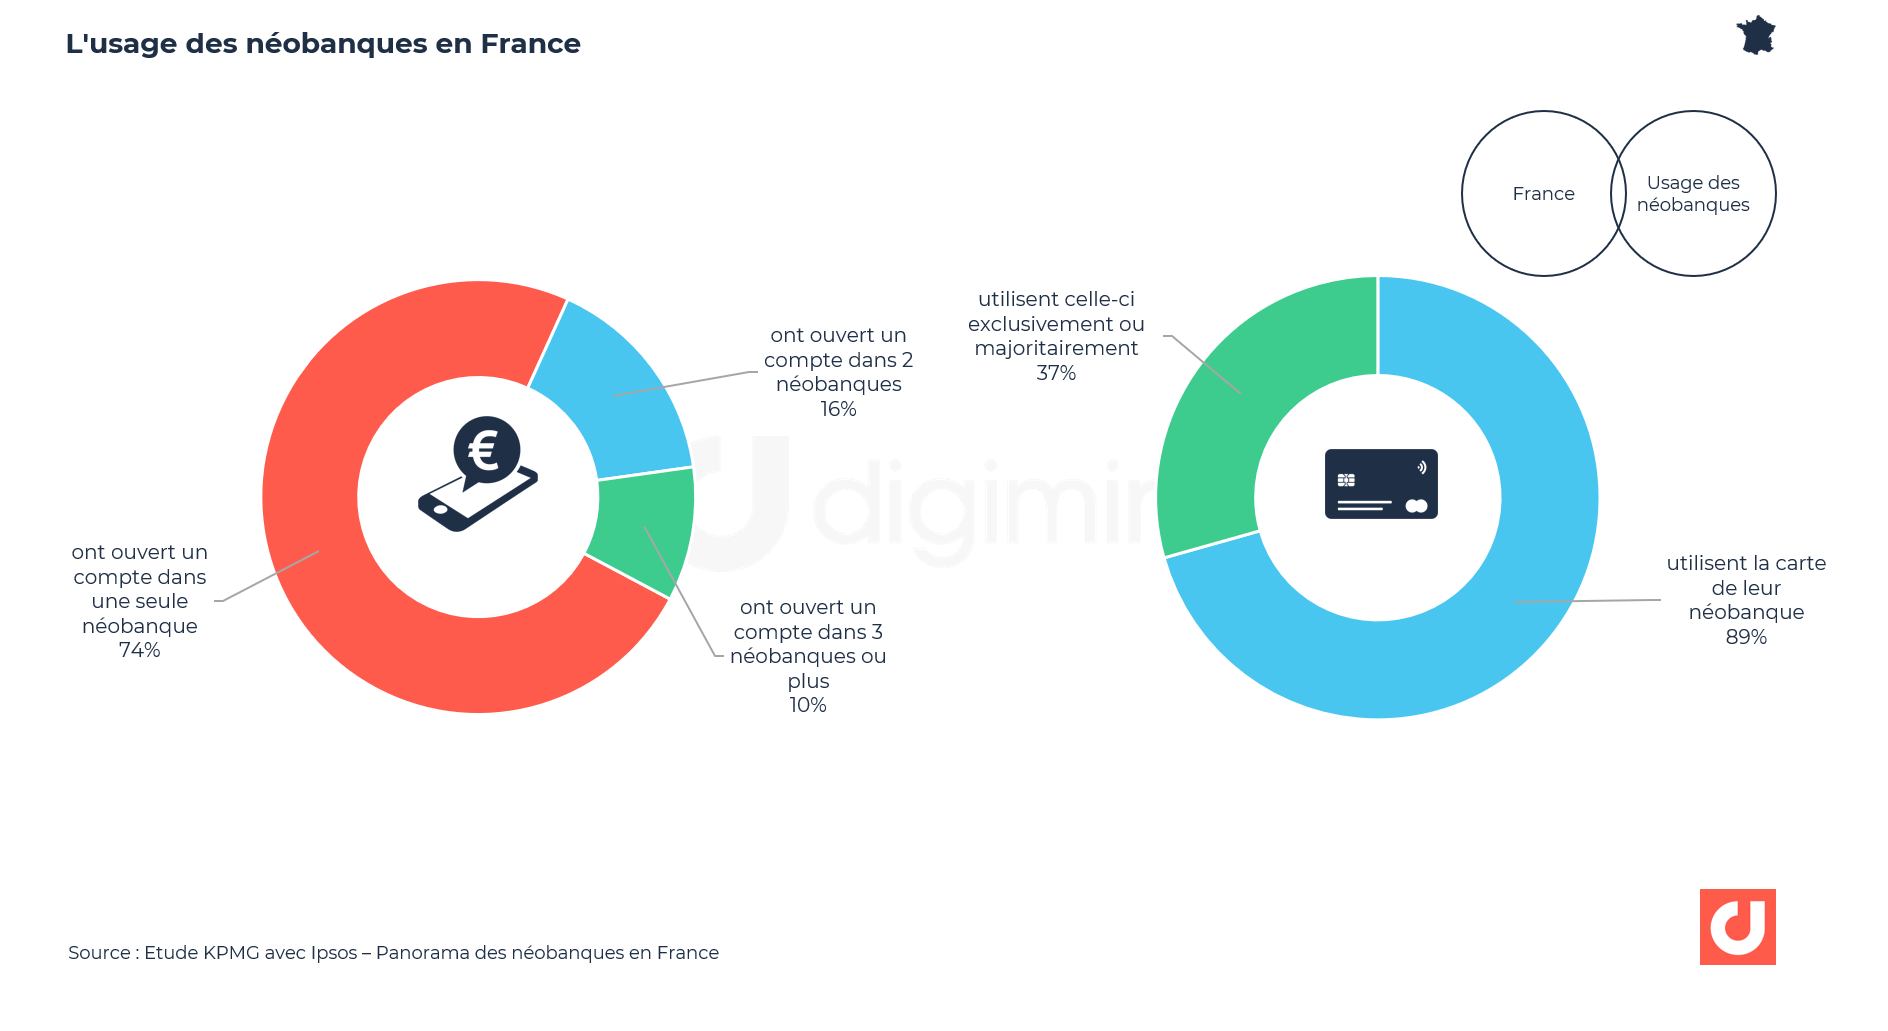 L'usage des néobanques en France (KPMG)